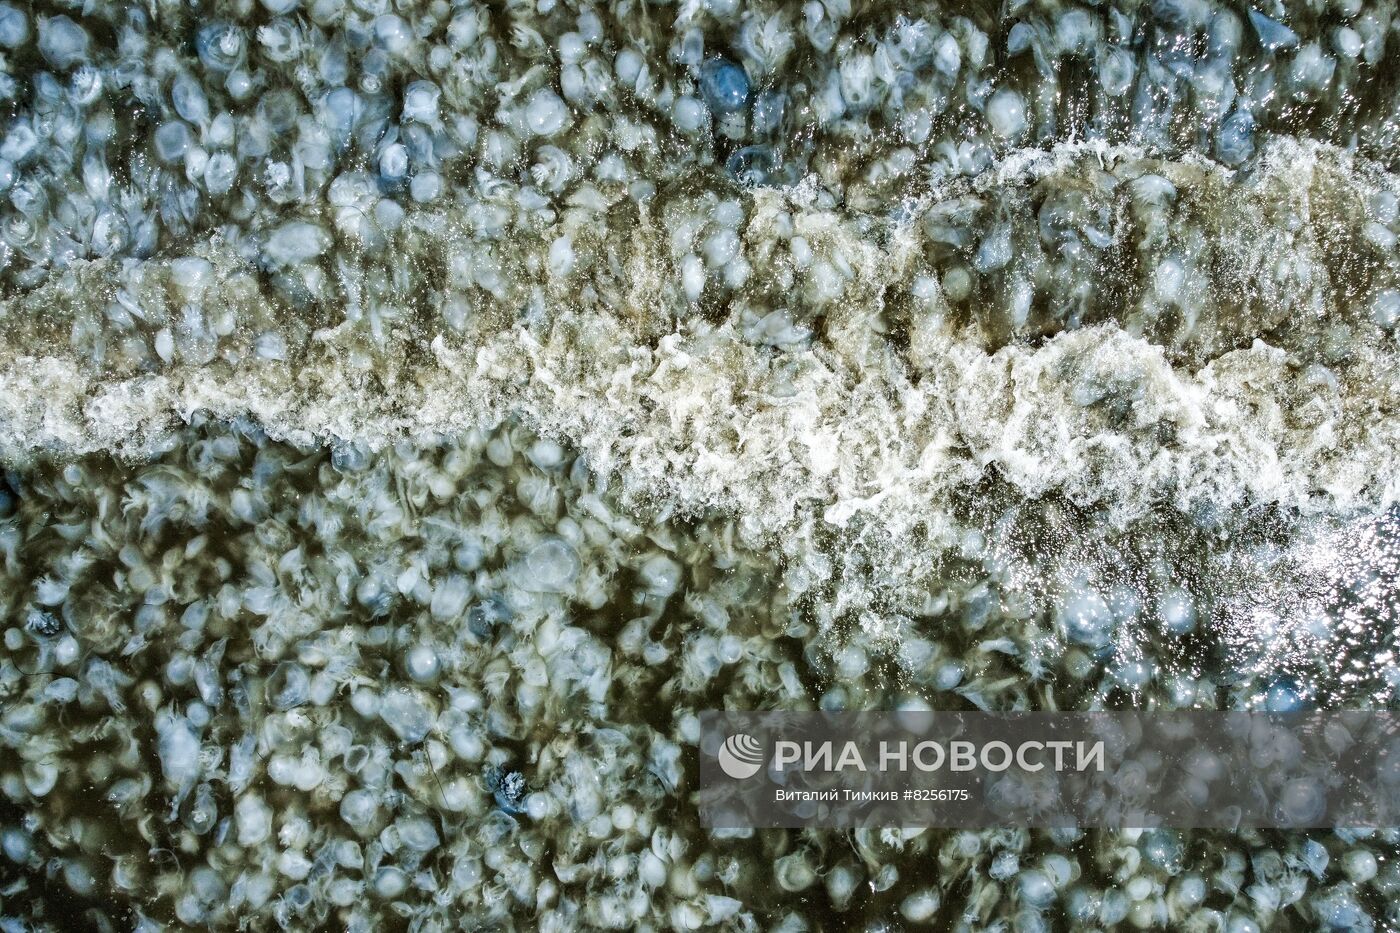 Нашествие медуз на пляжах Азовского моря